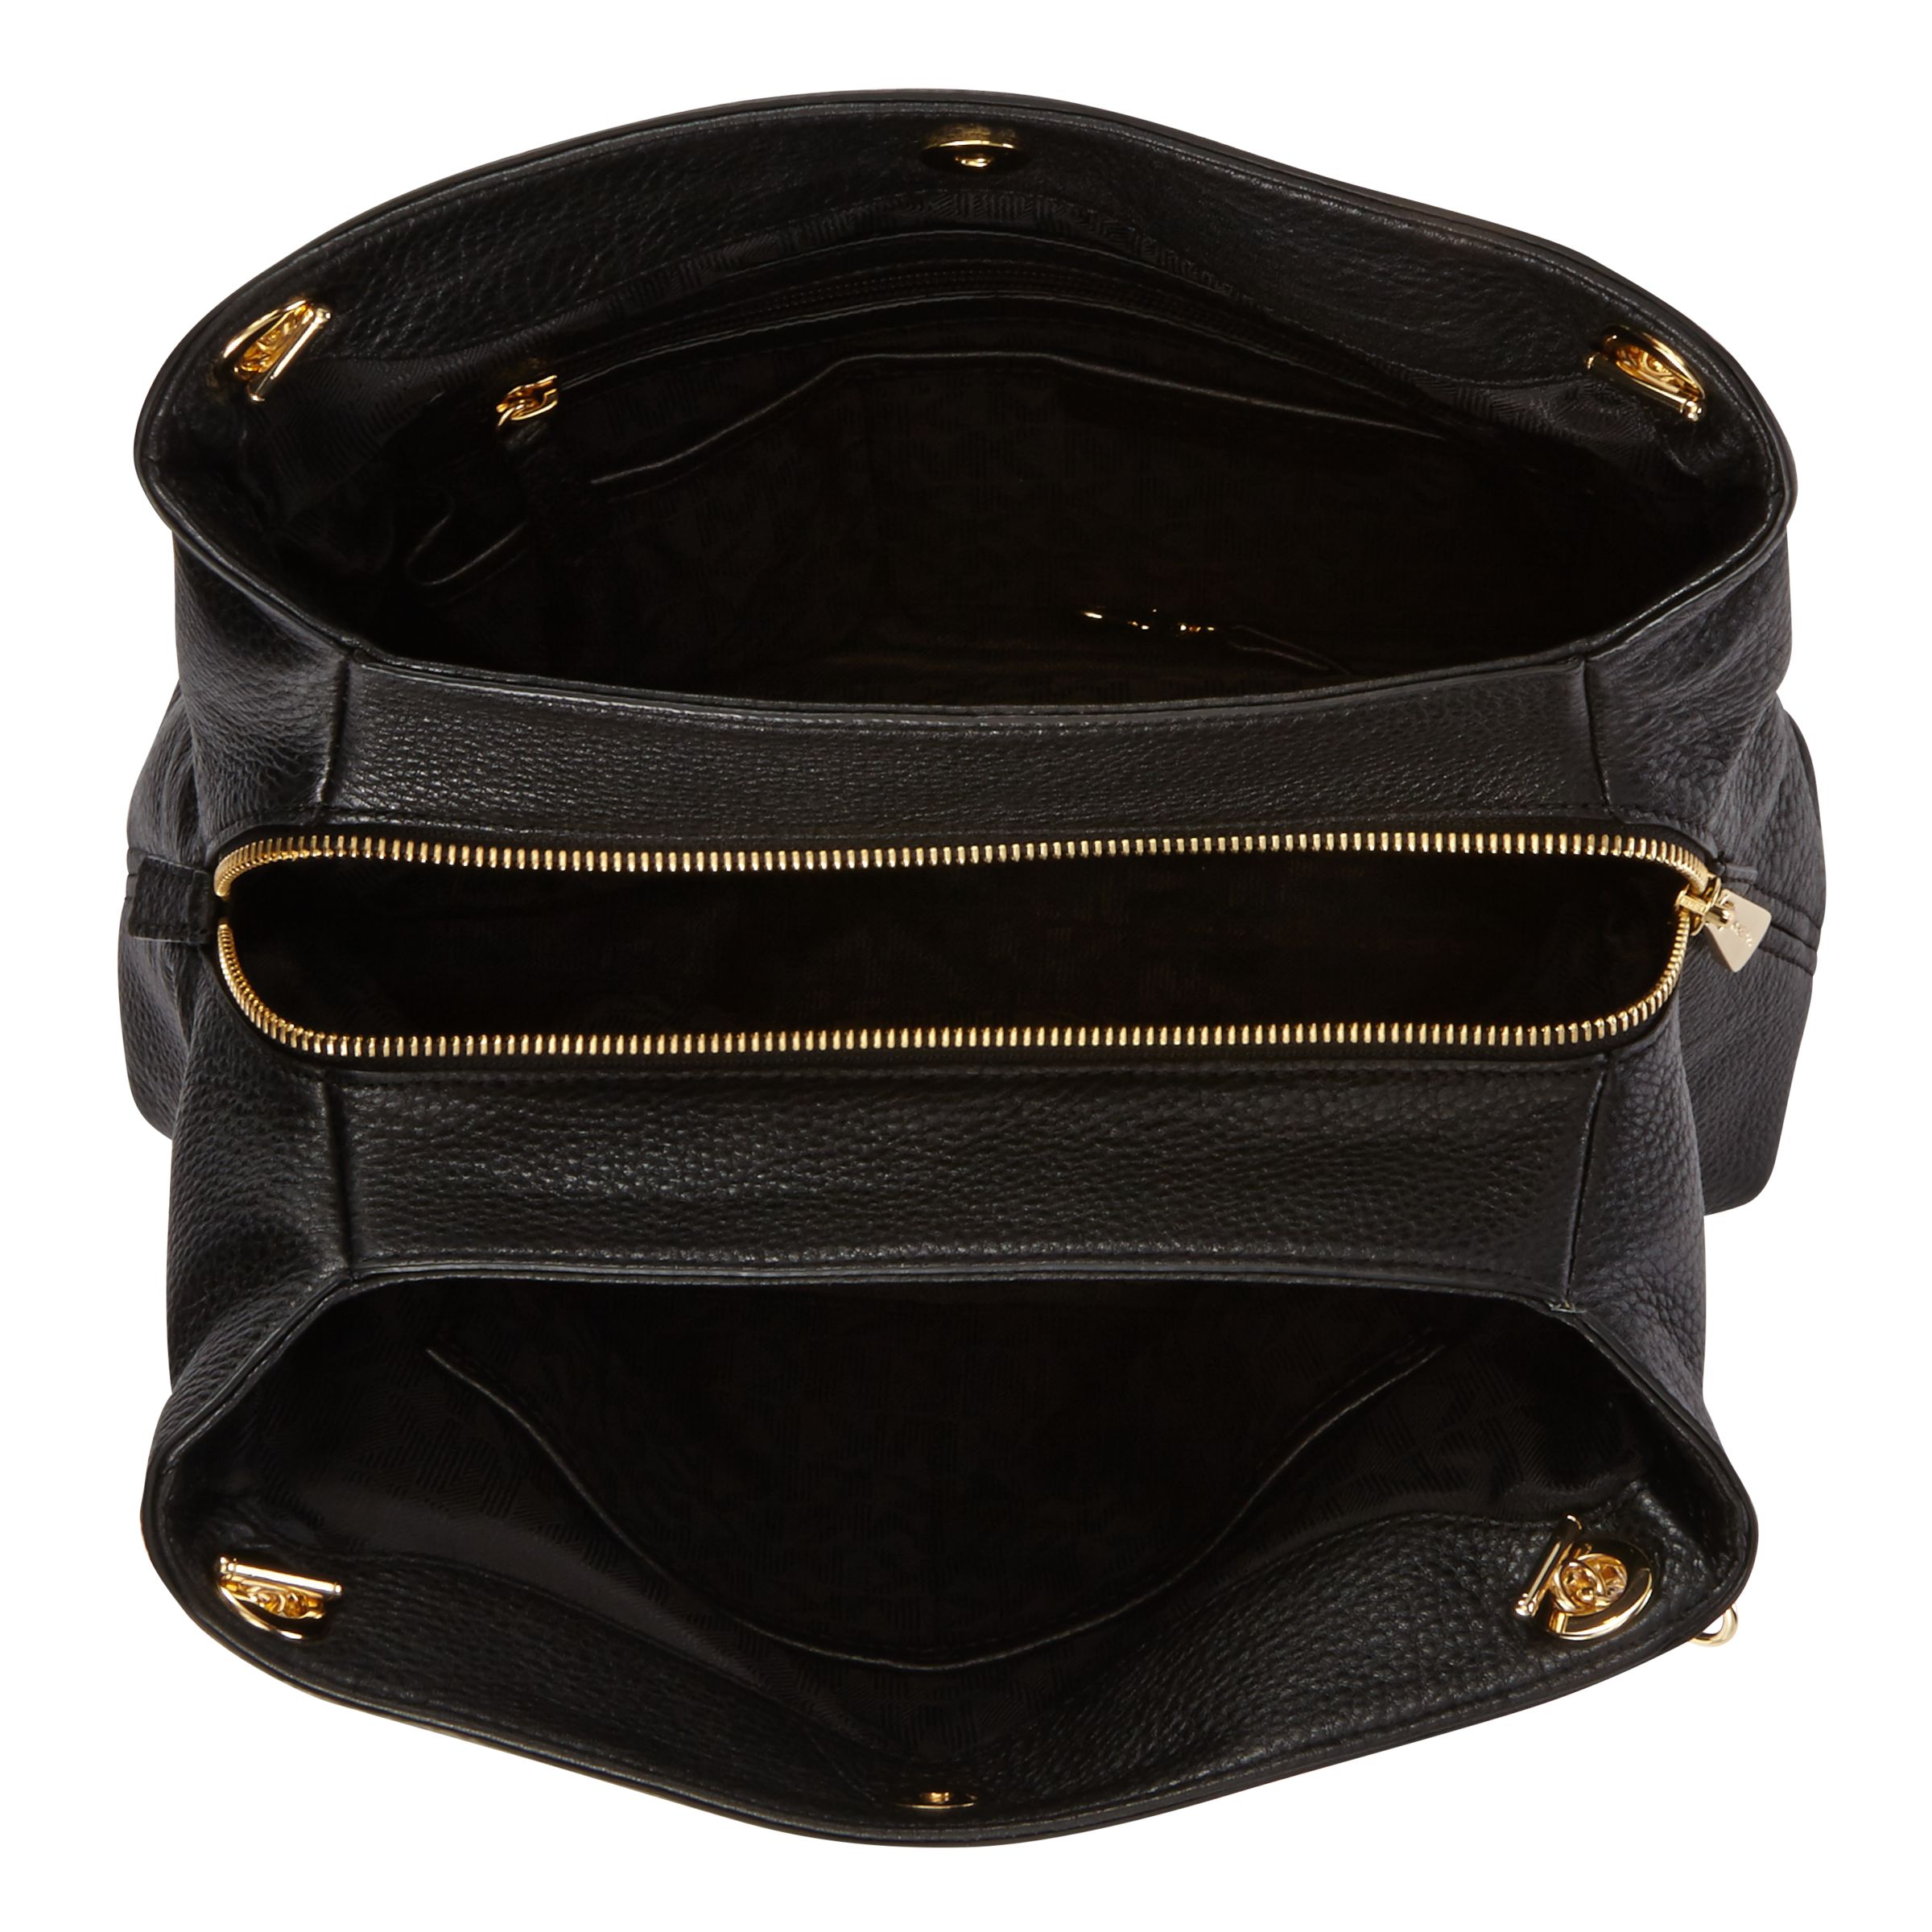 michael kors handbag with chain handles